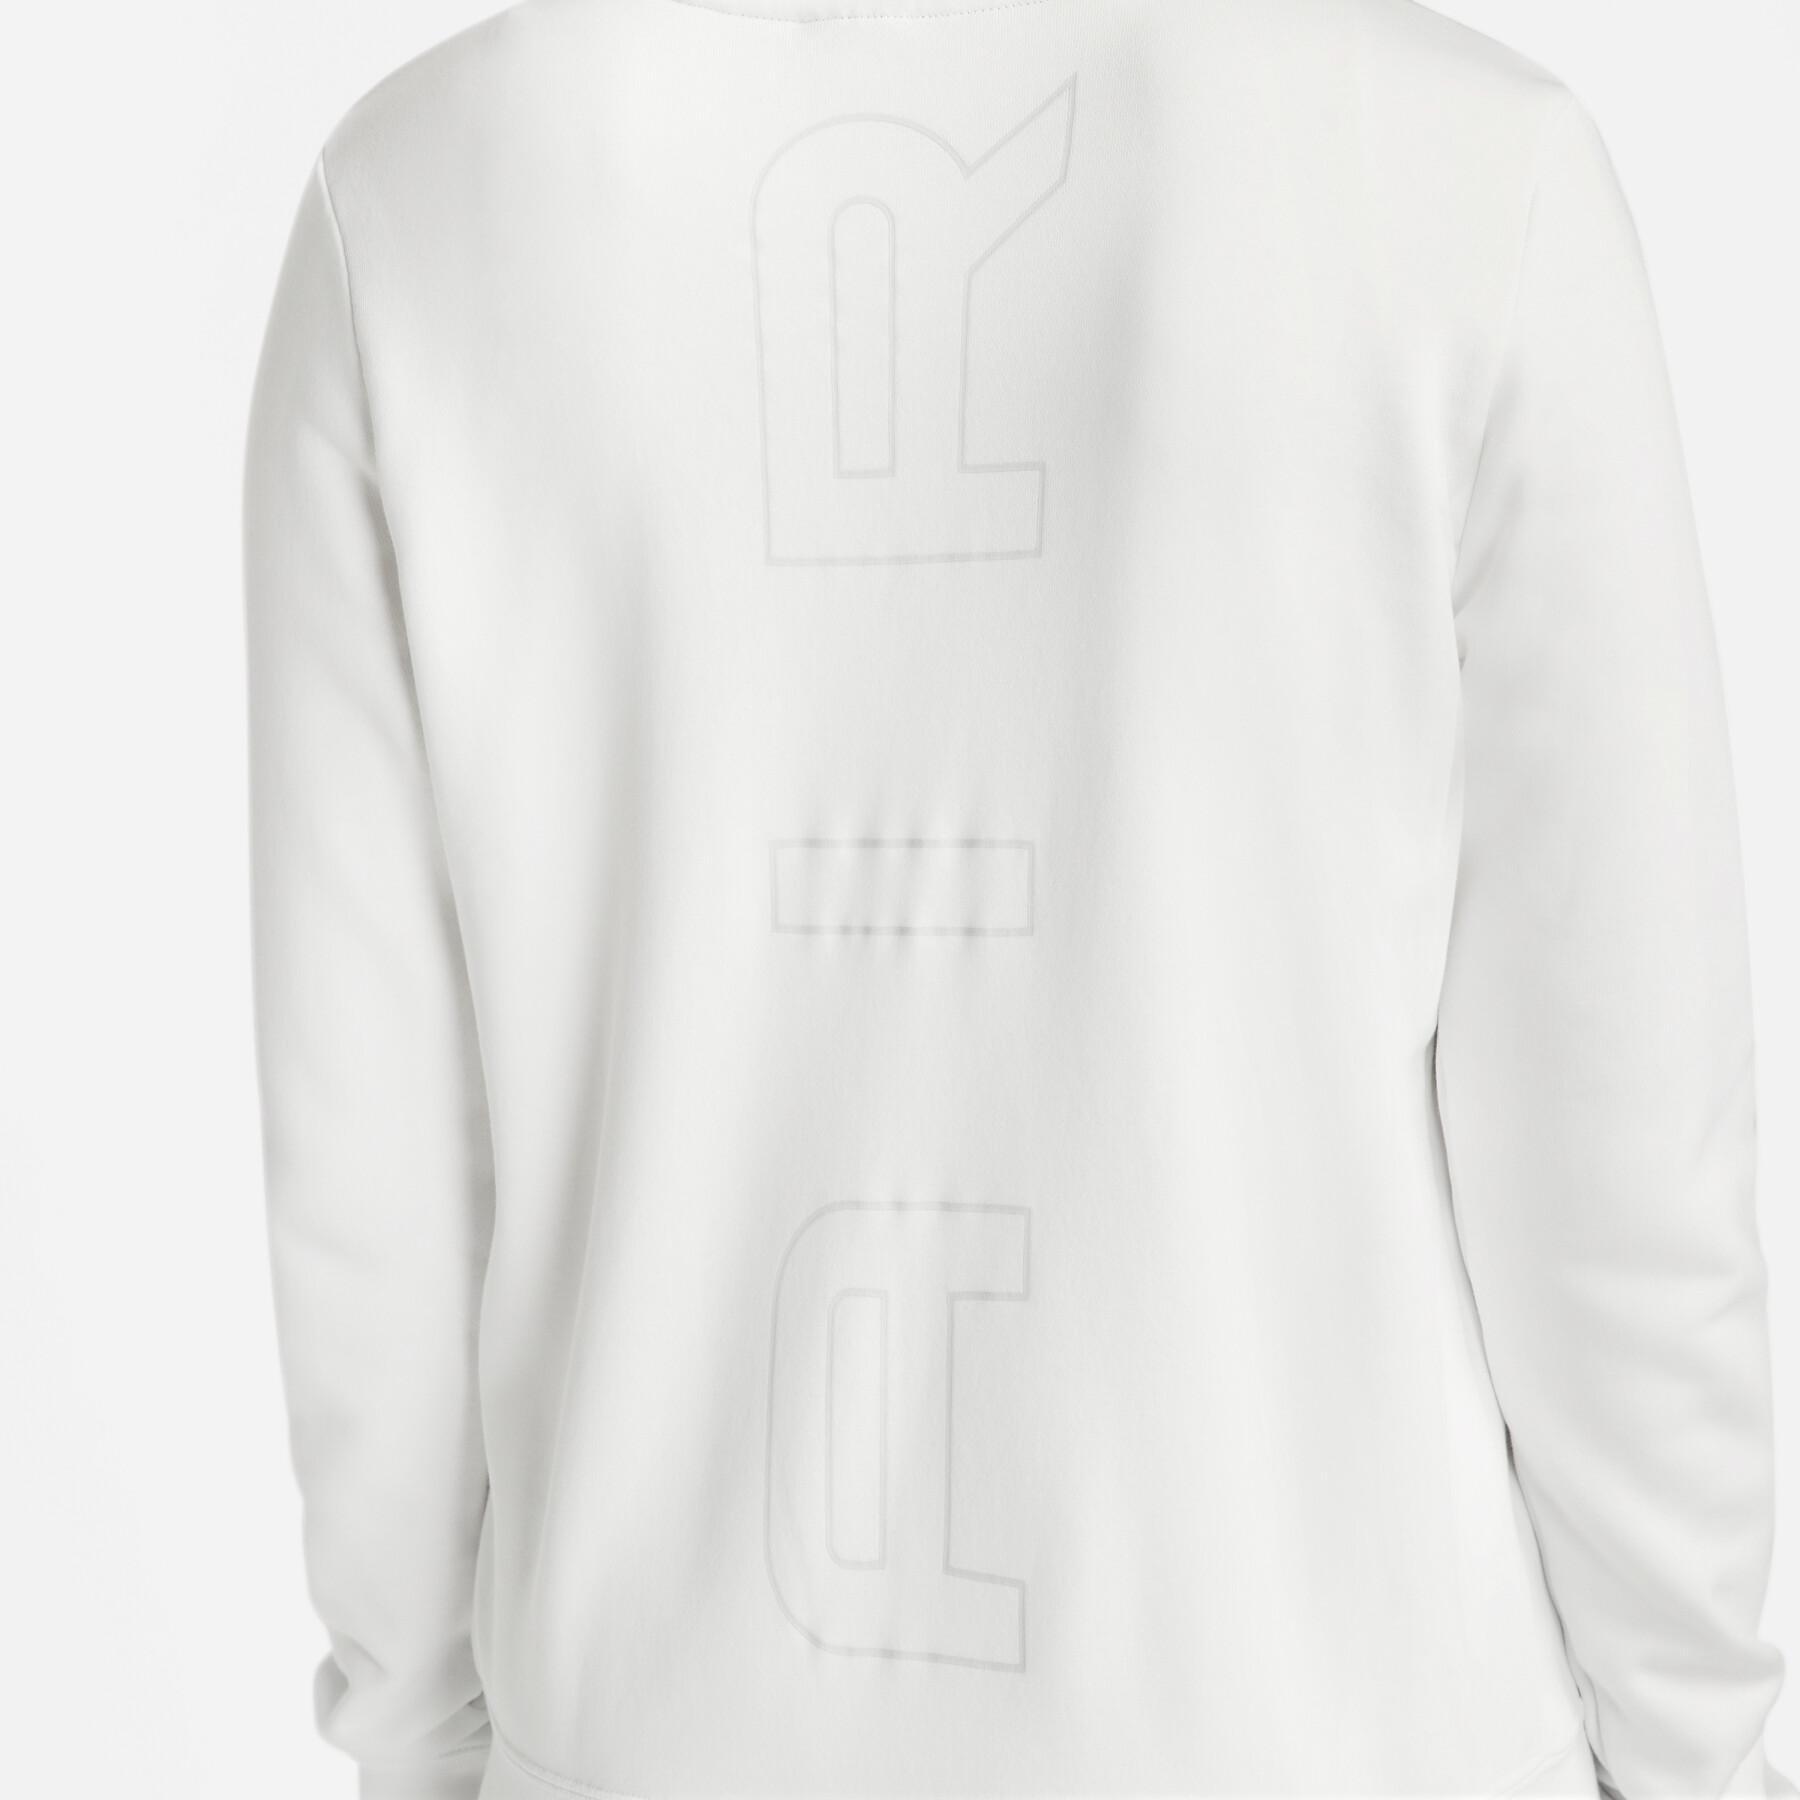 Sweatshirt full zip hoodie for women Nike Air Fleece